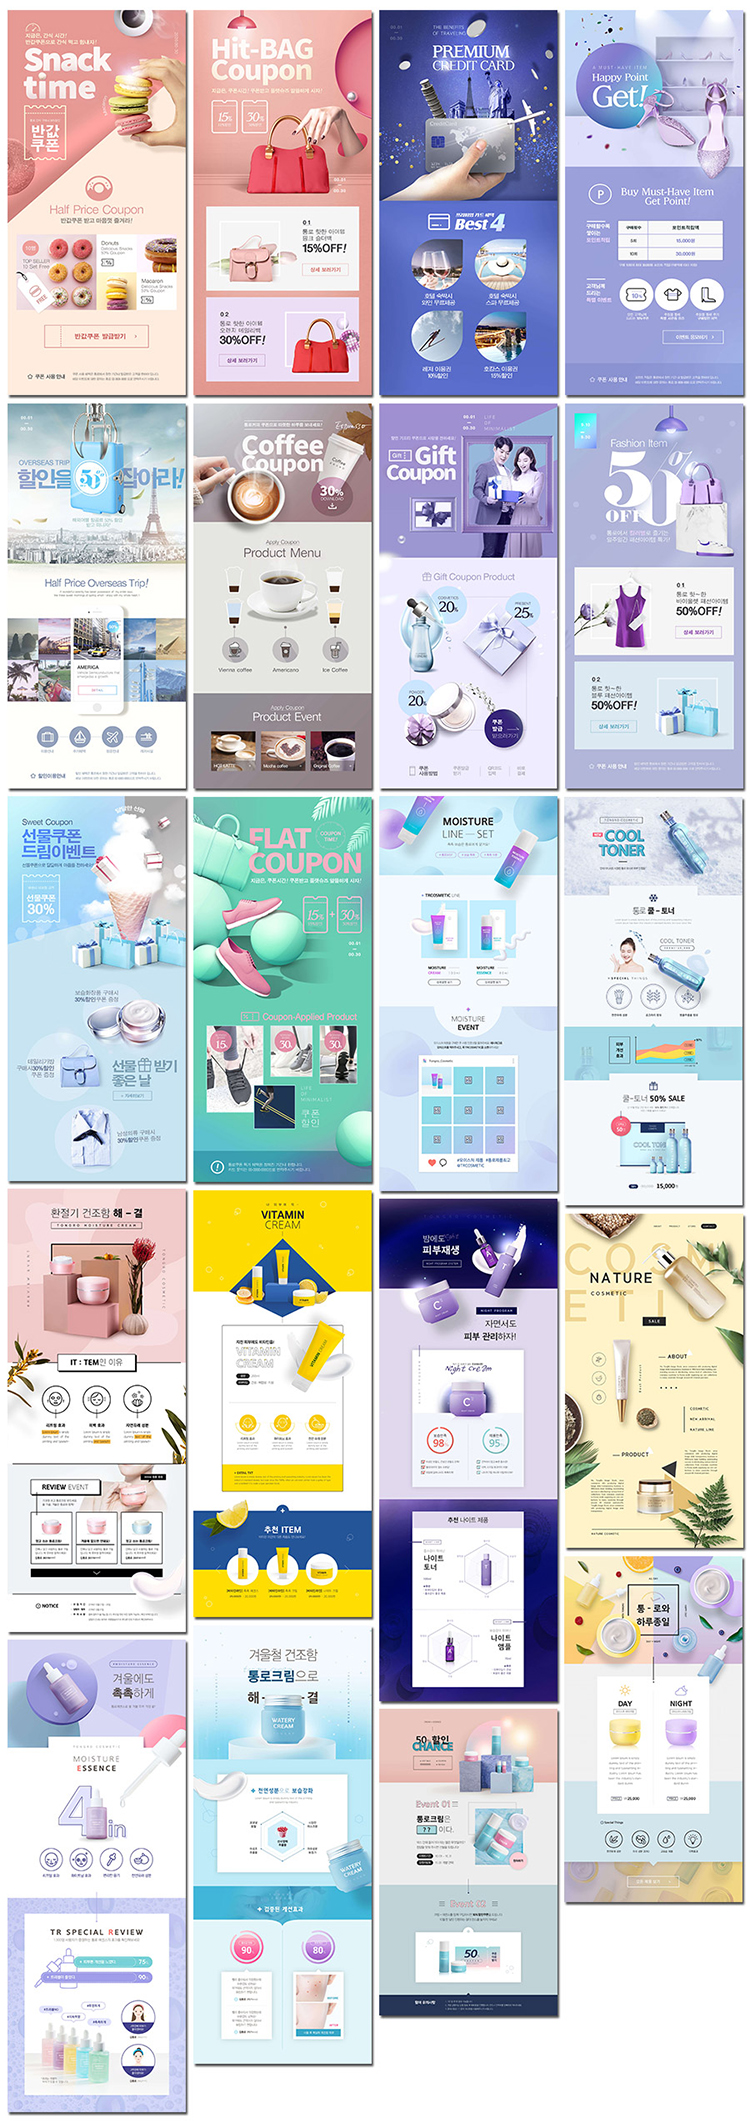 电商服装箱包美妆甜品杂志详情产品简介排版海报网页设计模板素材